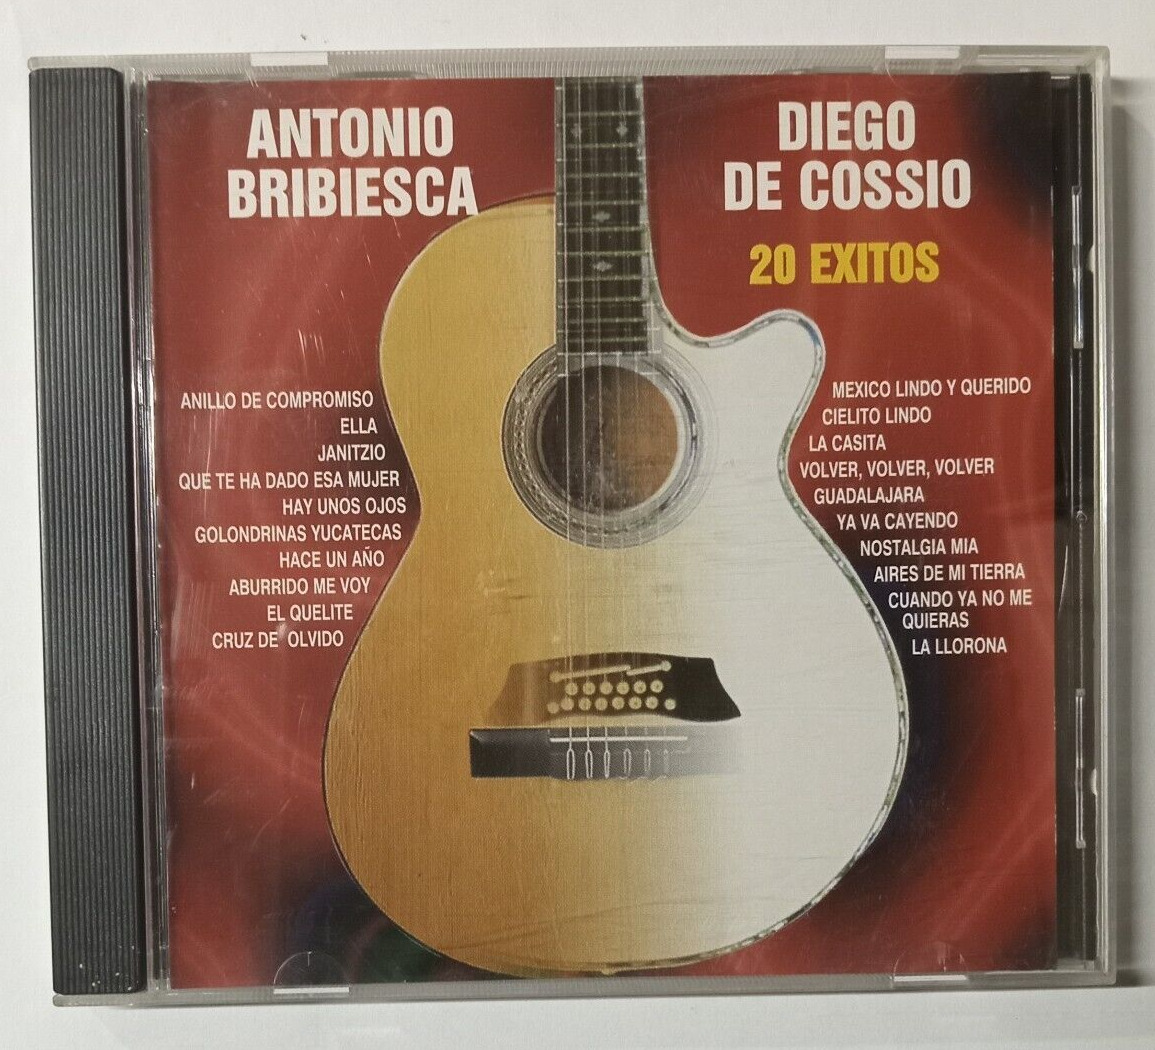 ANTONIO BRIBIESCA, DIEGO DE COSSIO -20 EXITOS- 2002 MEXICAN CD ALBUM, RANCHERAS